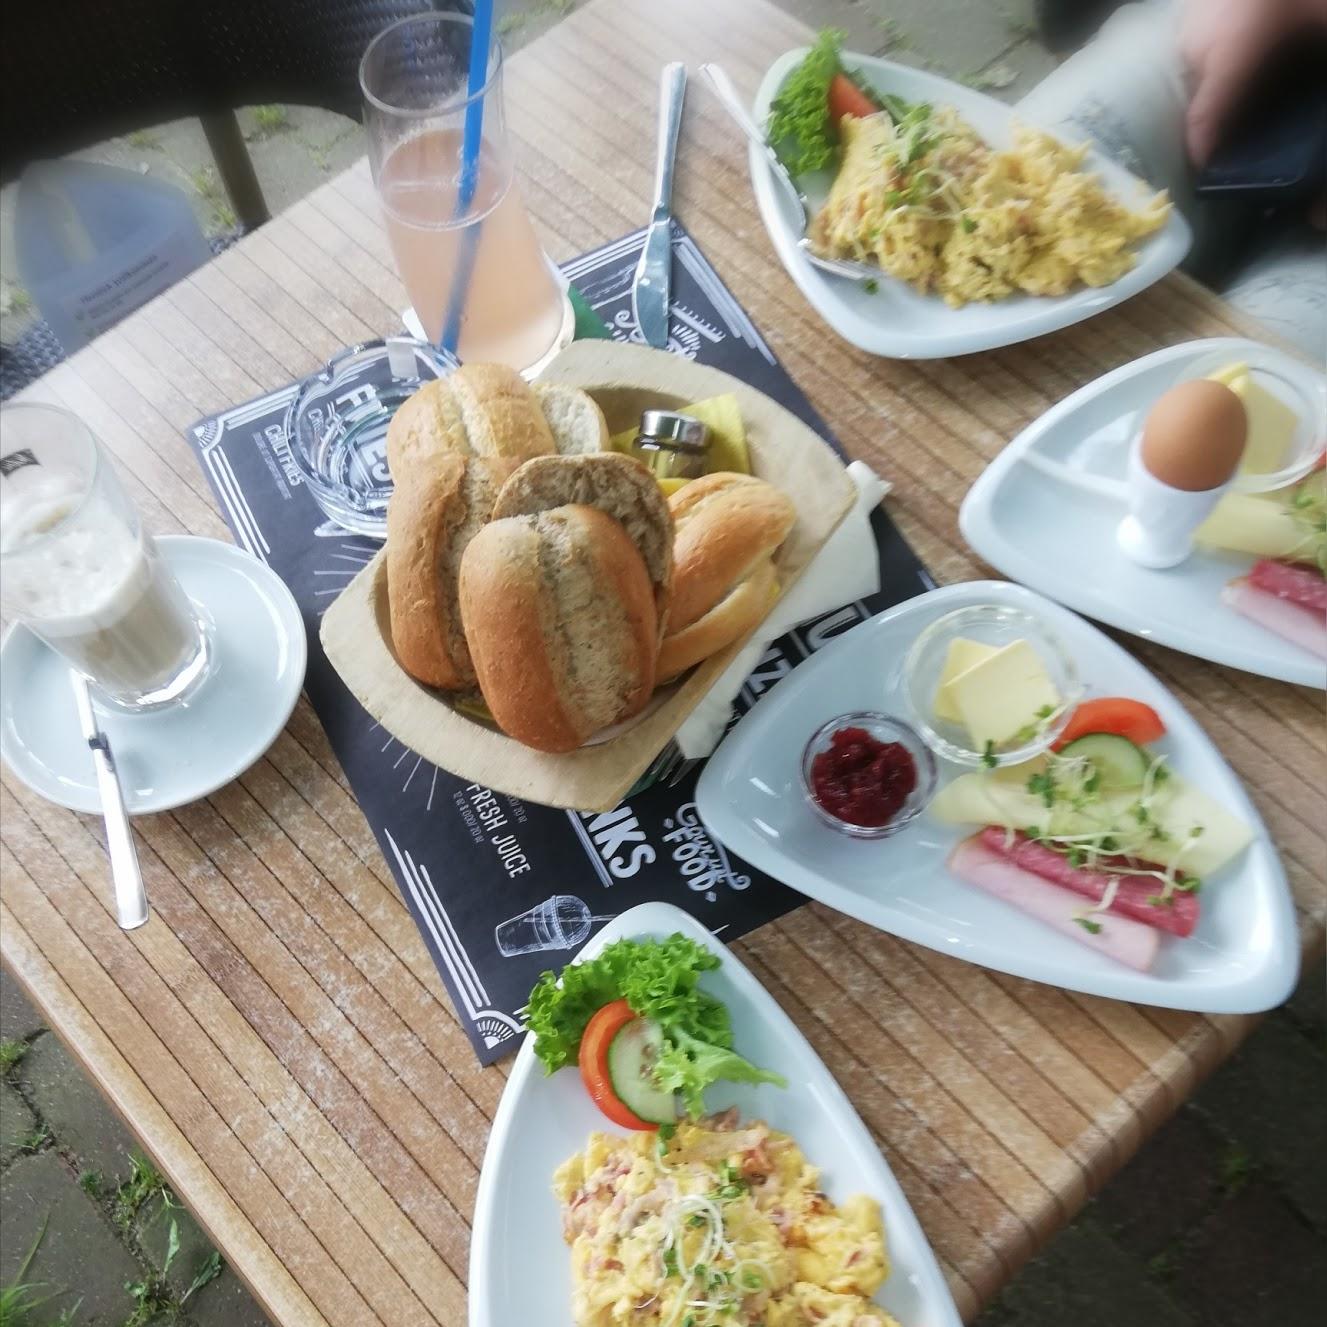 Restaurant "Paradiesmühle" in  Lügde